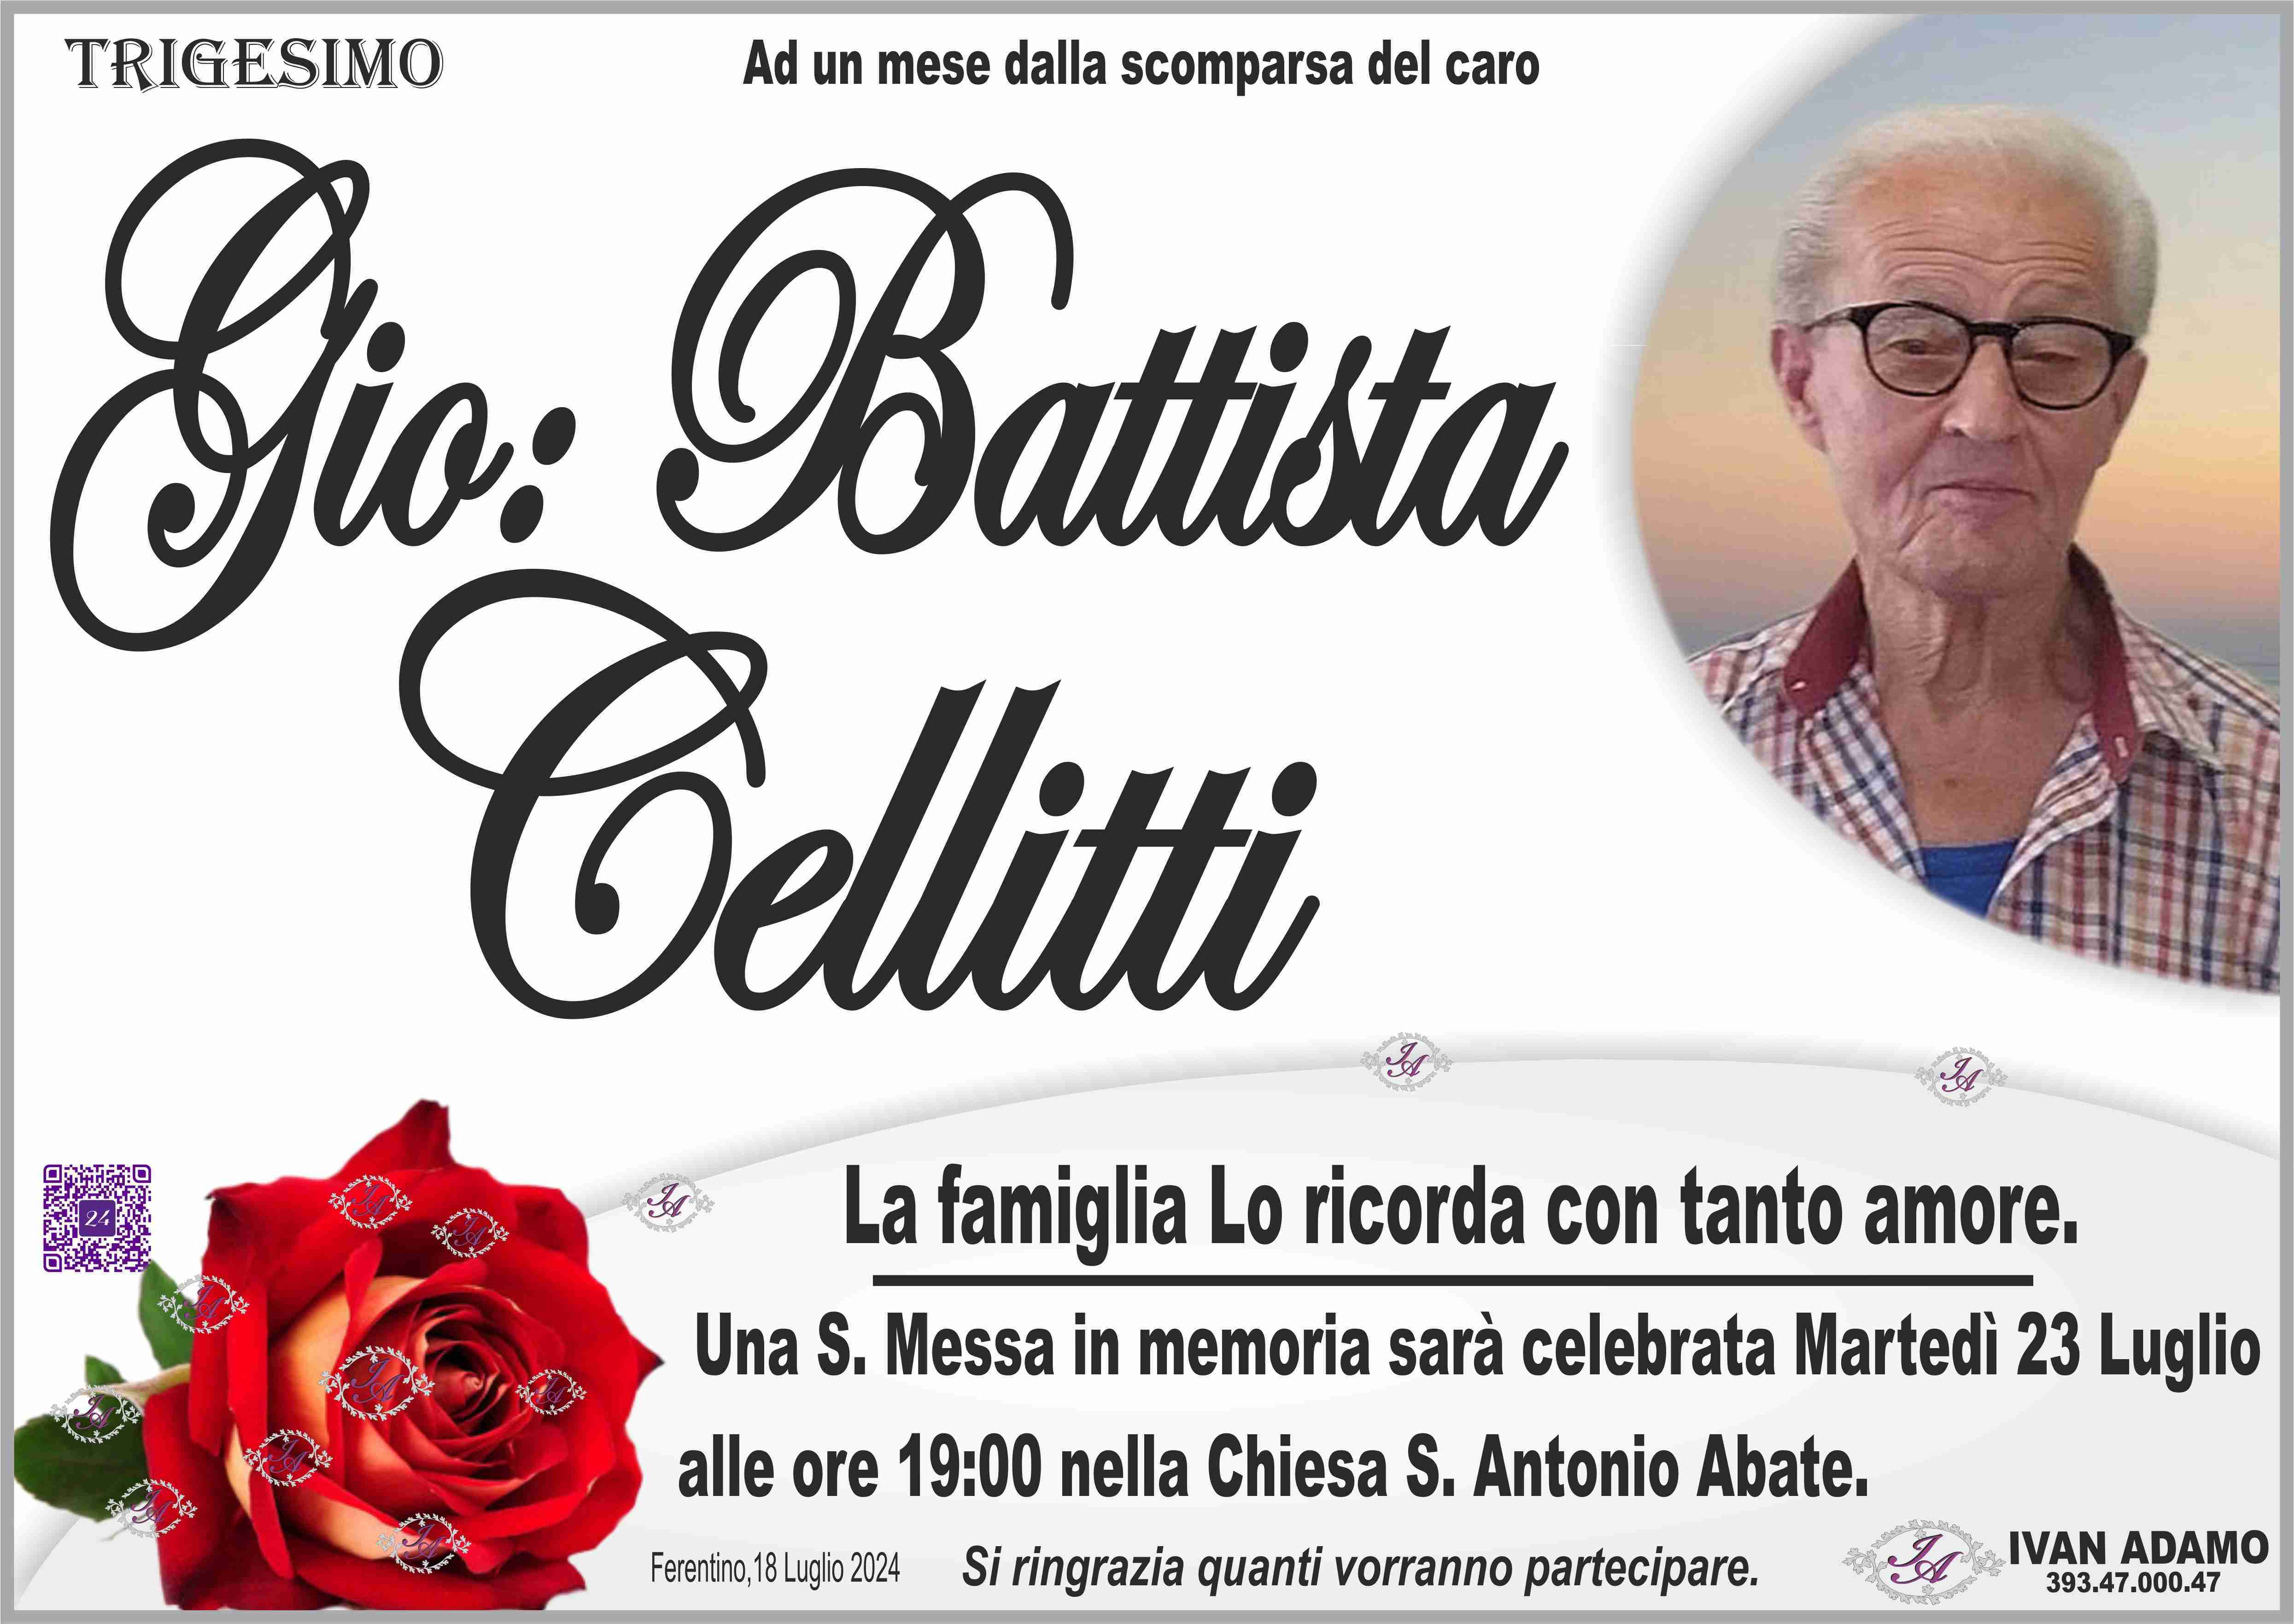 Gio: Battista Cellitti